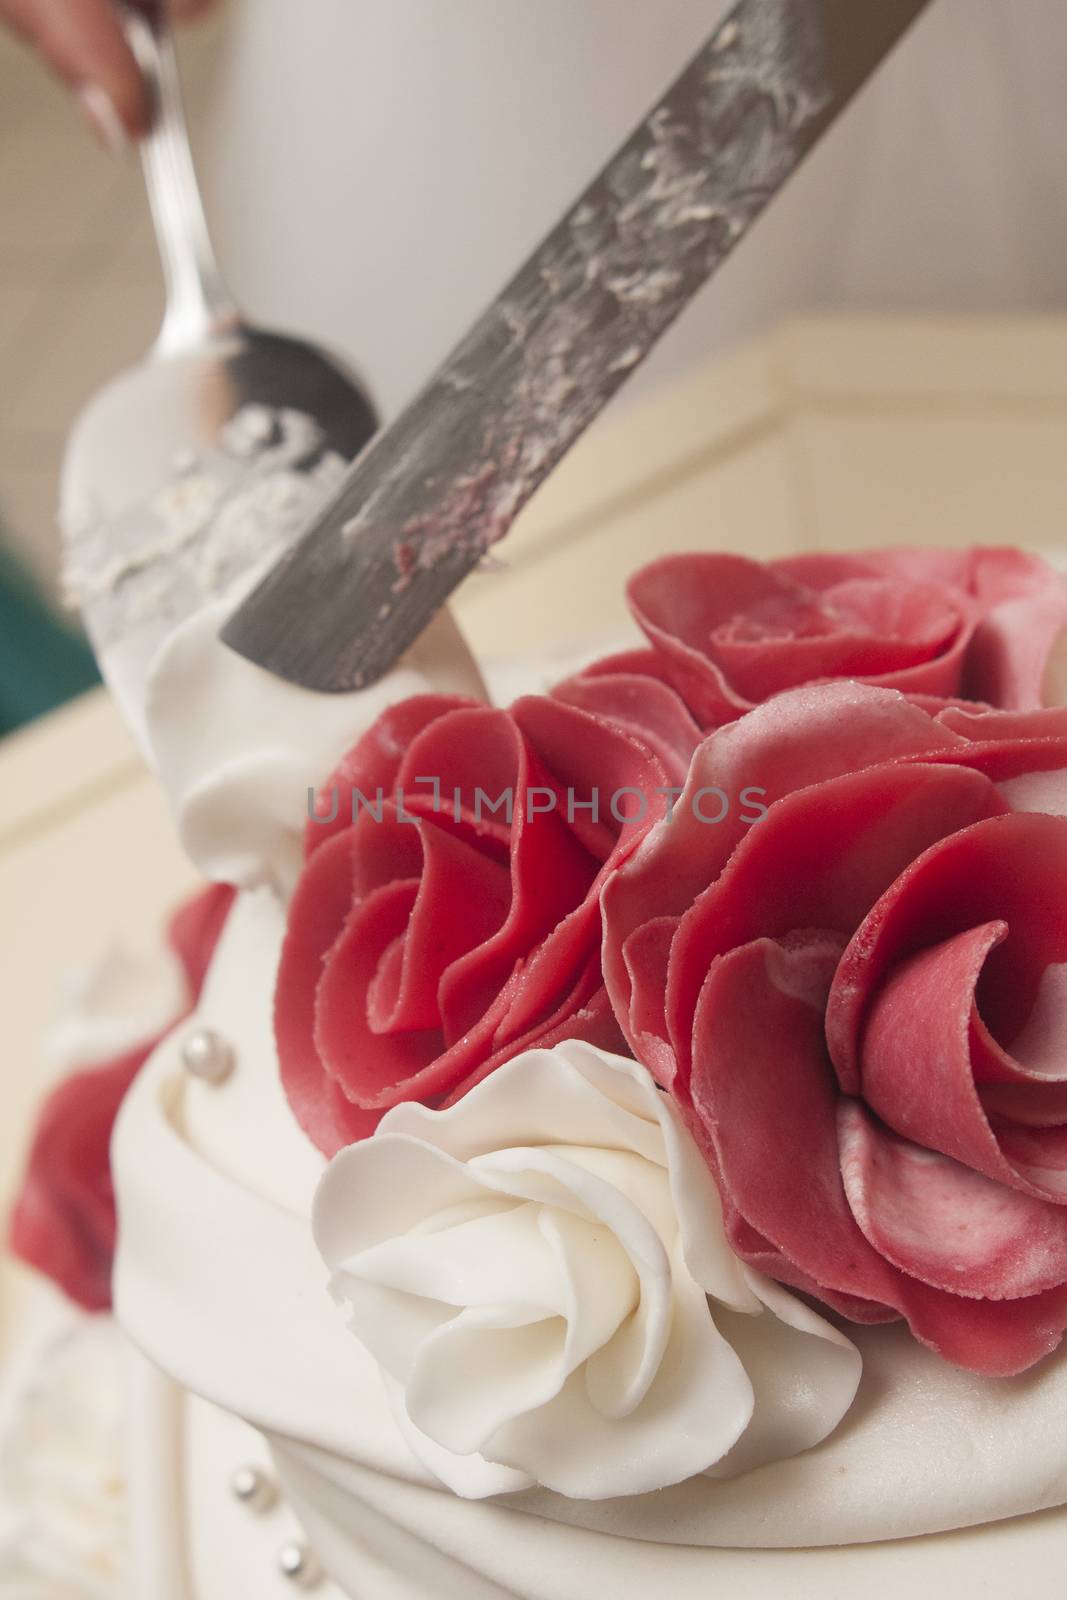 marzipan red rose on wedding cake